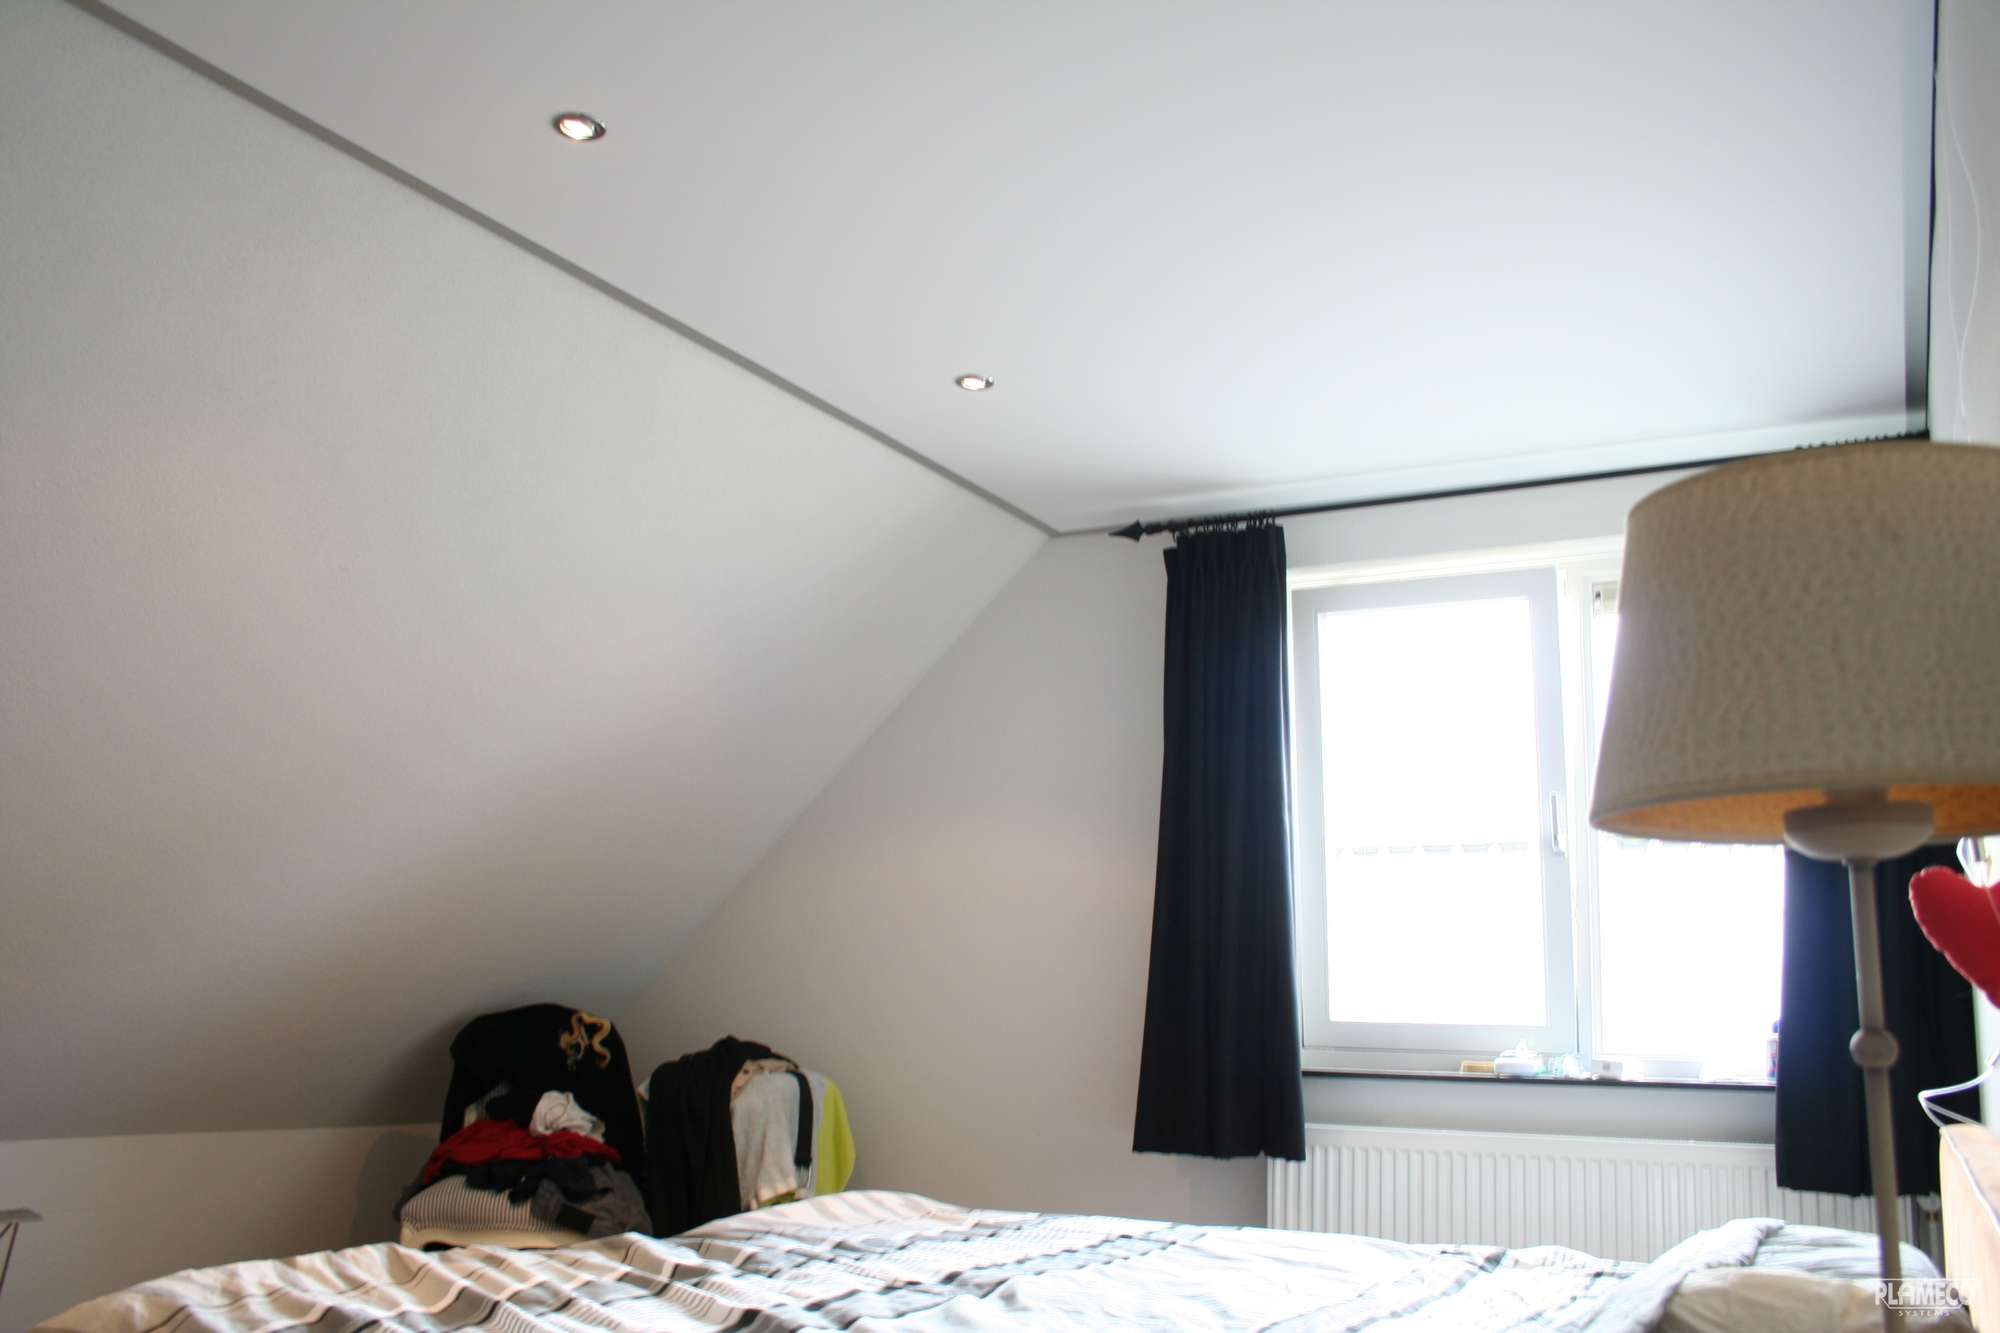 Plameco plafond in de slaapkamer